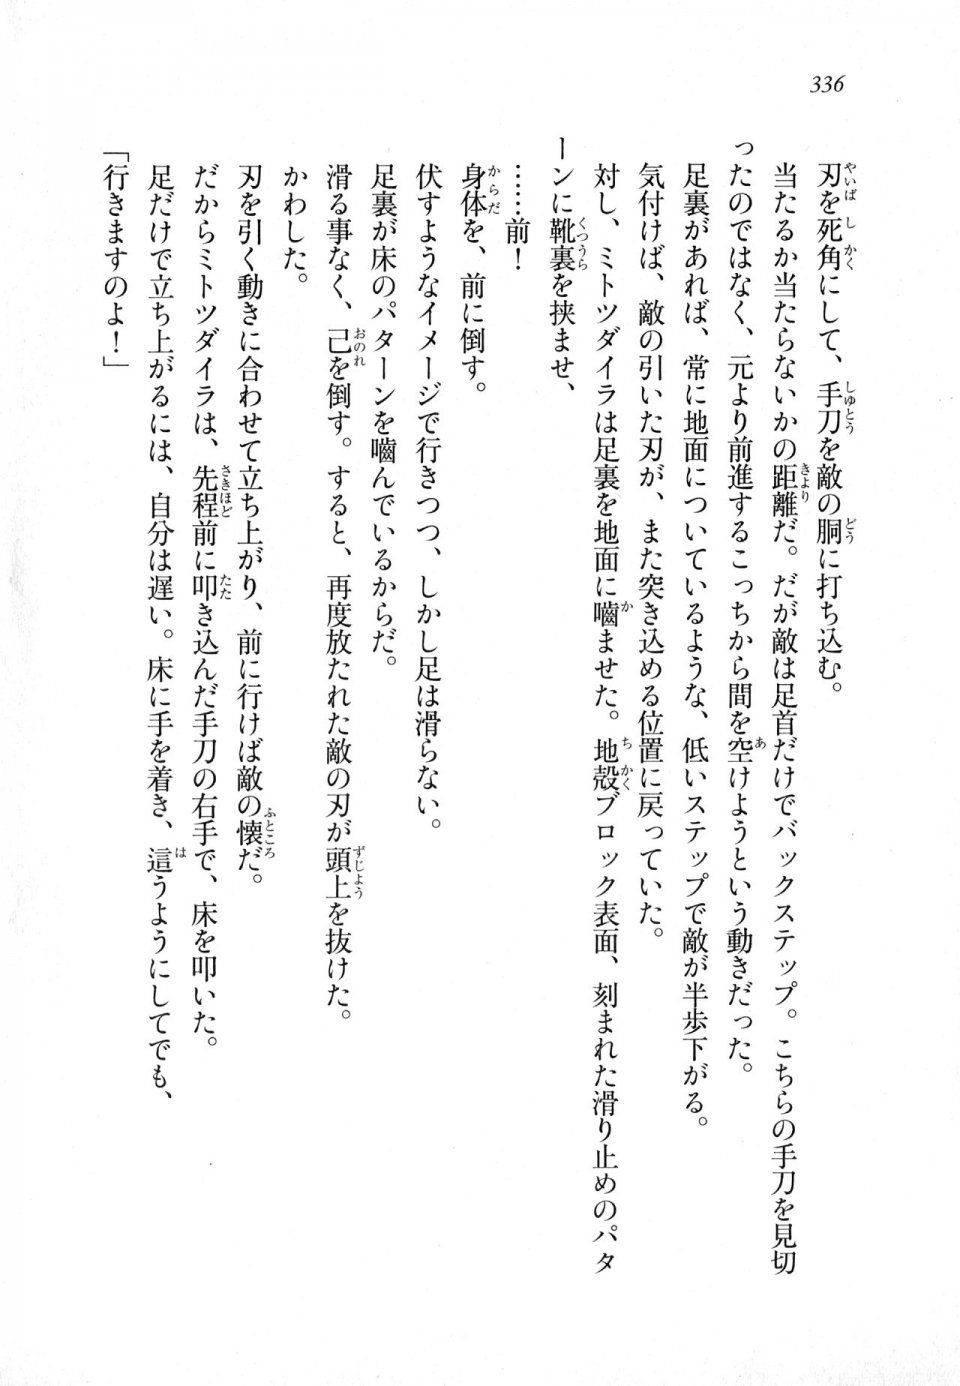 Kyoukai Senjou no Horizon LN Sidestory Vol 1 - Photo #334